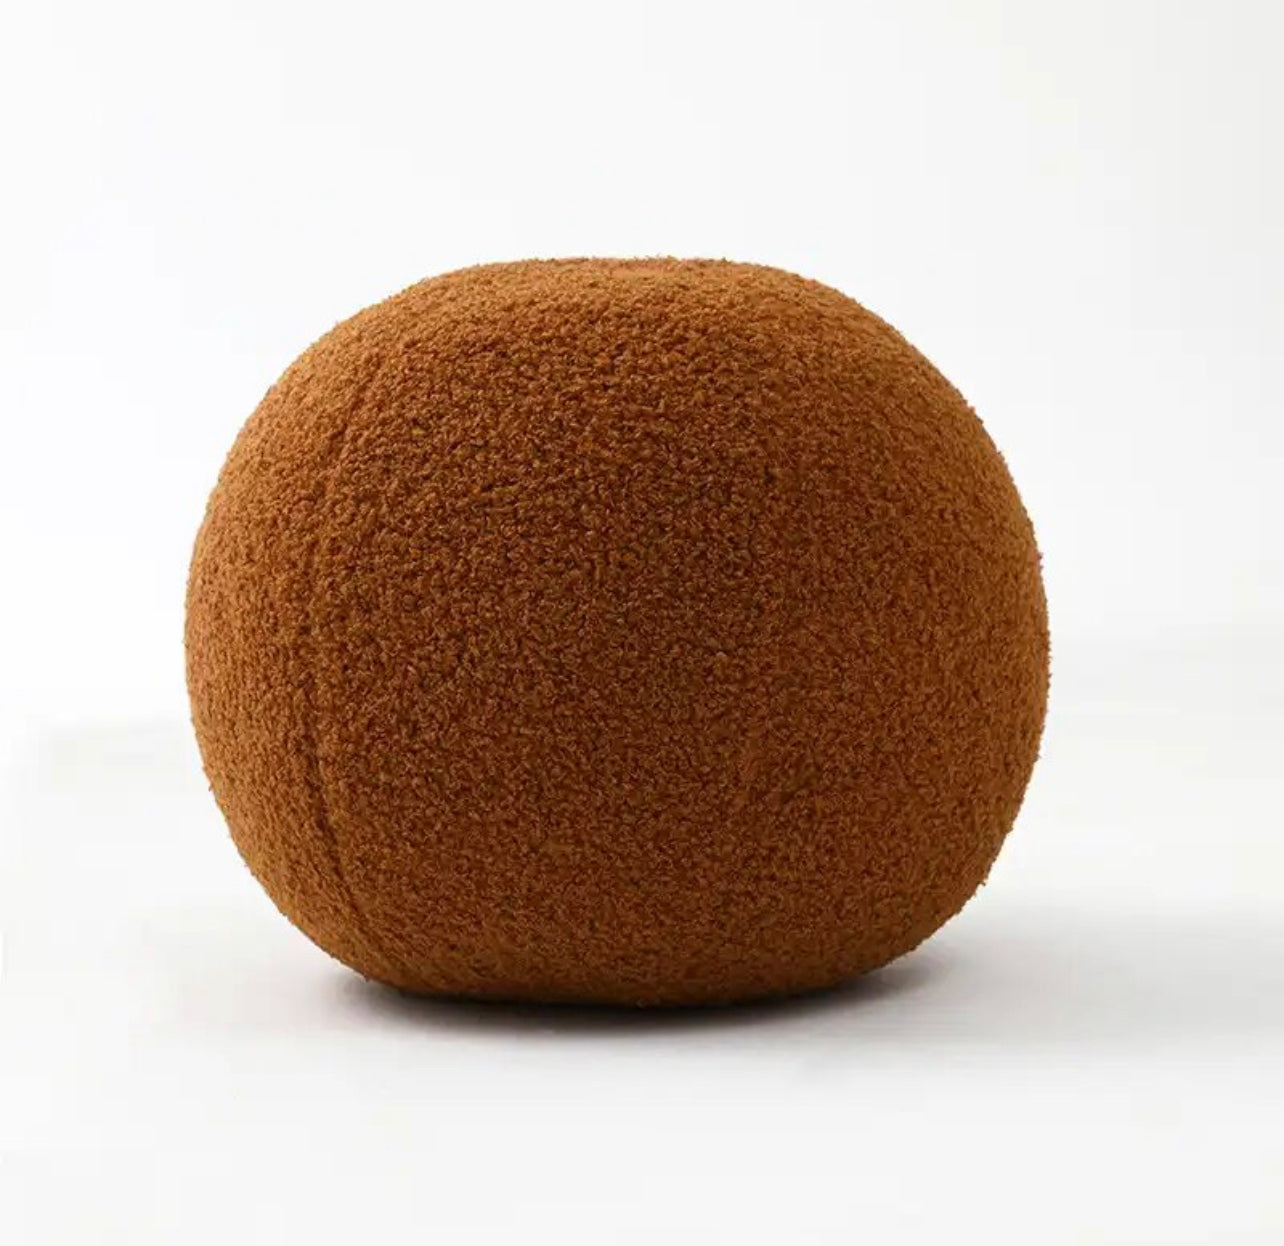 The Ball Brown Cushion